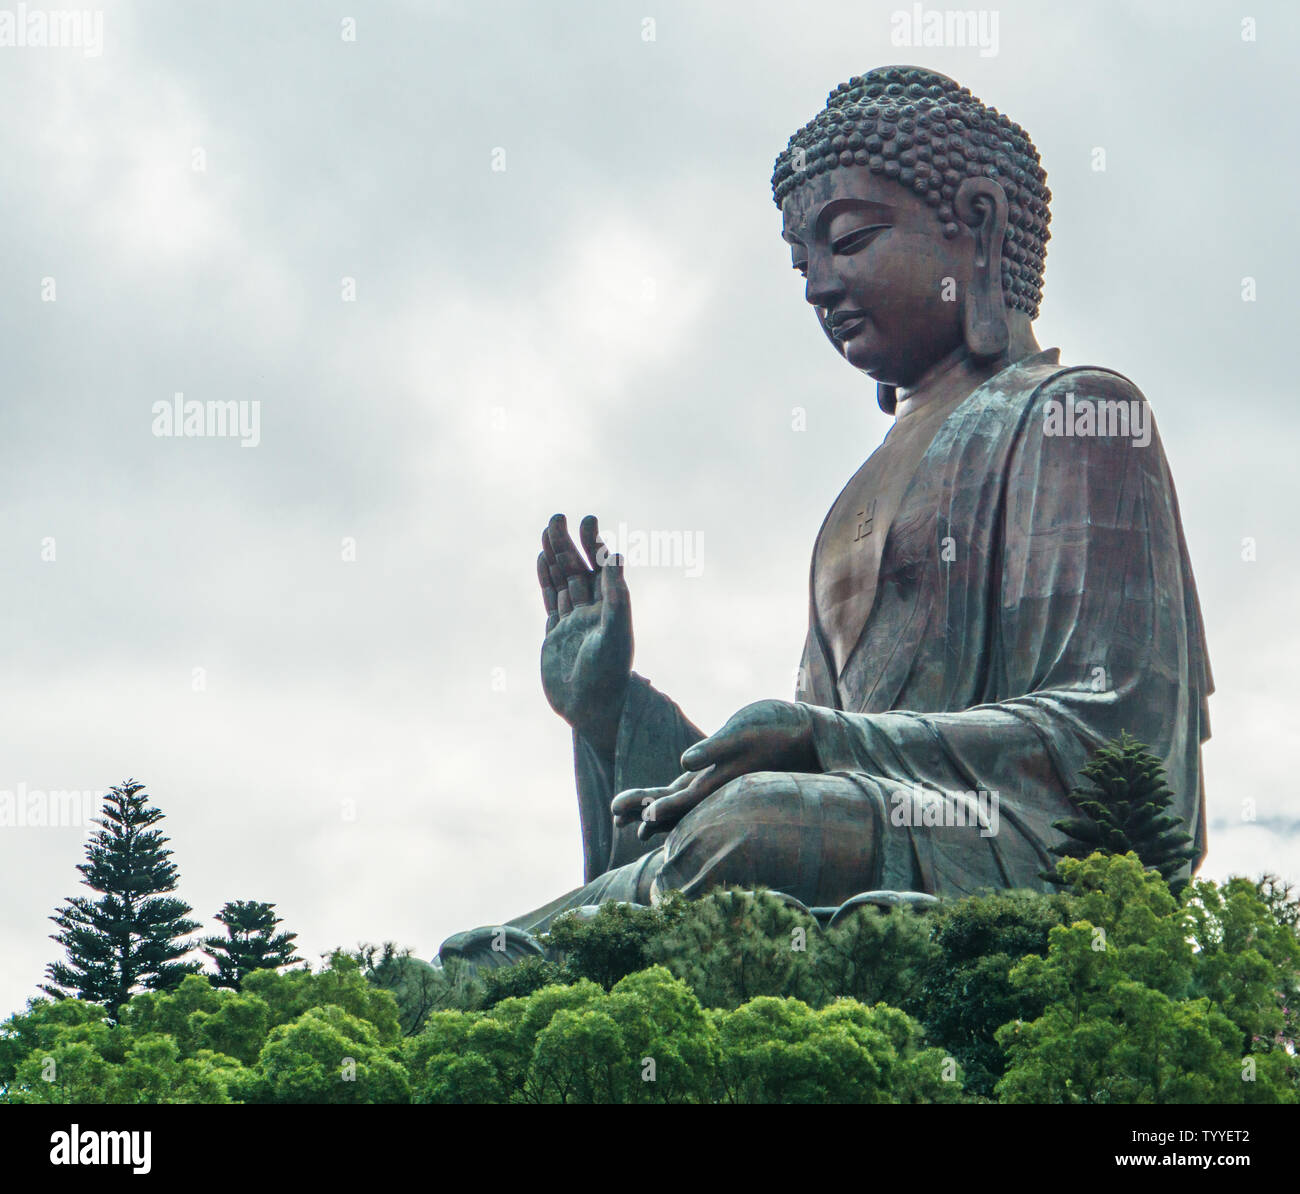 The giant Tian Tan Buddha statue at Ngong Ping, Lantau Island, Hong Kong. Stock Photo